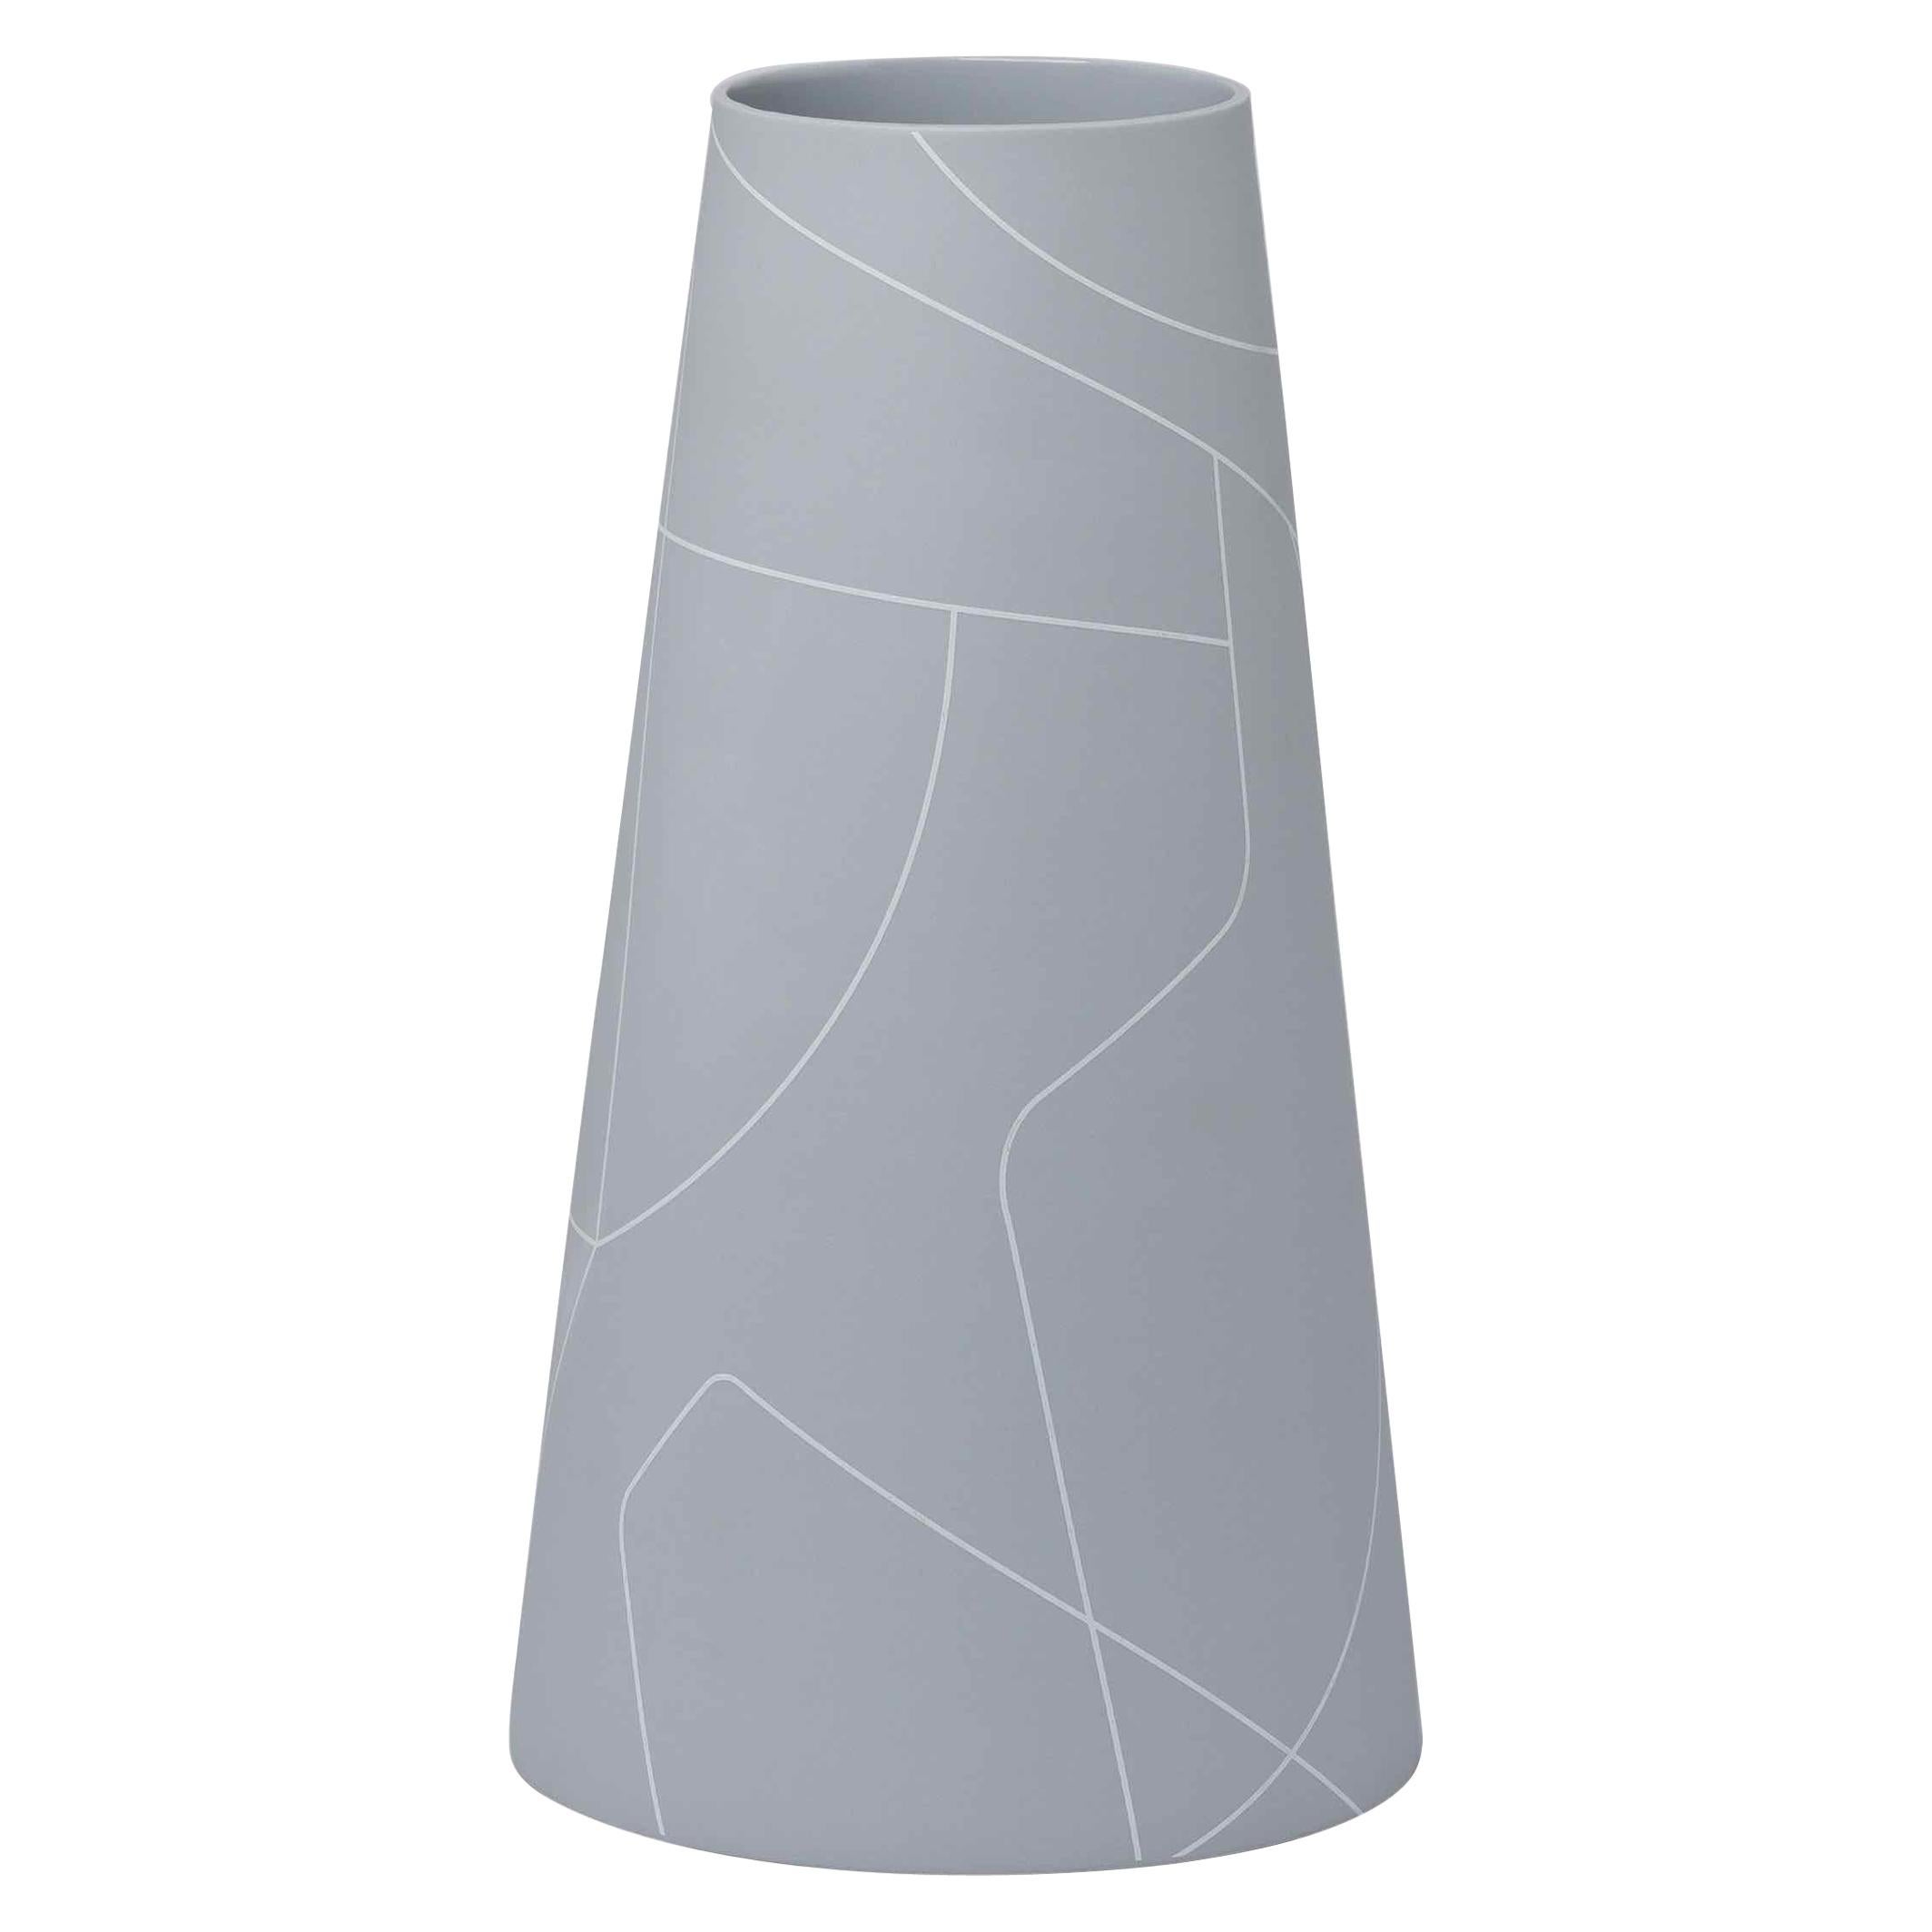 Grand vase conique en céramique grise fine de taille moyenne avec motif de lignes graphiques